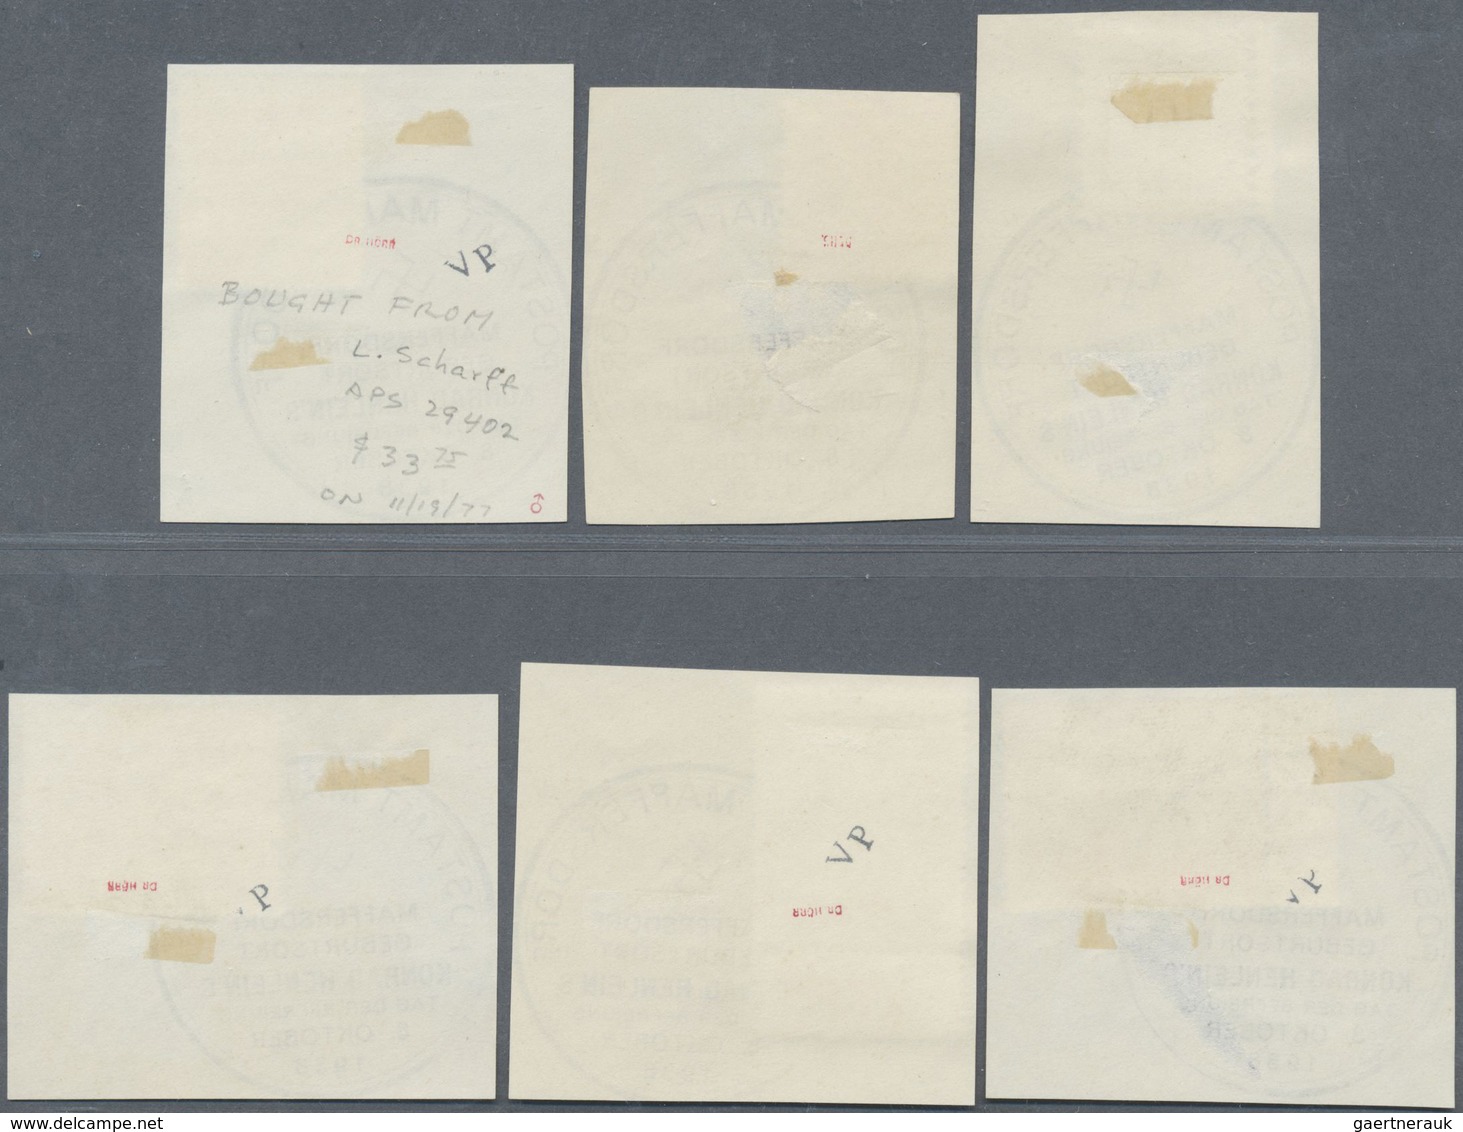 Brfst/Br Sudetenland - Maffersdorf: 1938, Mi.Nr. 14, 29, 31-34, 6 Werte Auf Briefstück Sowie Nr. 23 Auf AK (G - Sudetenland